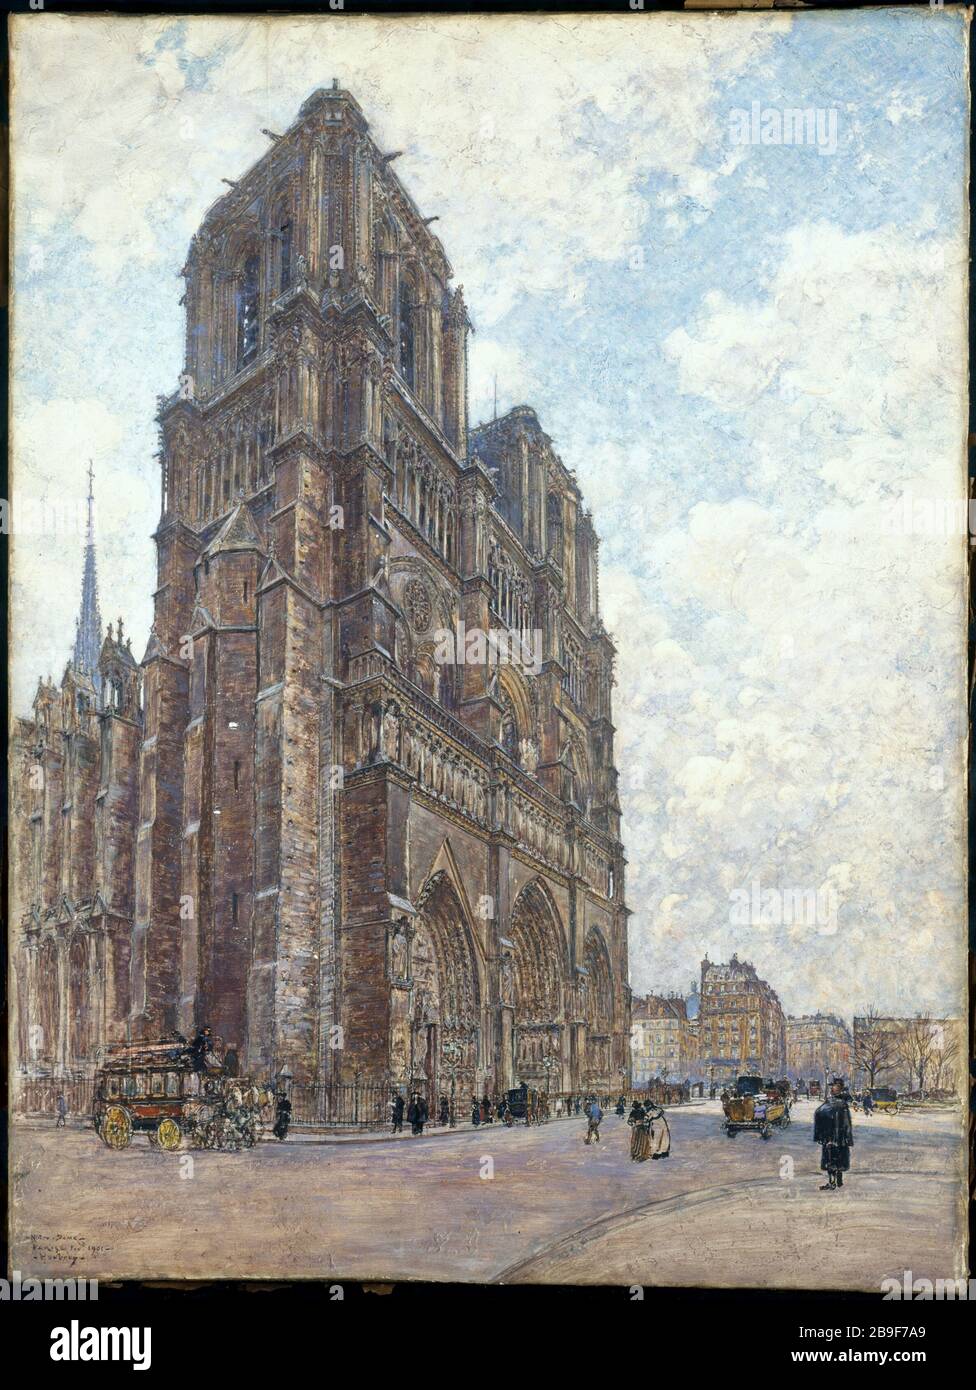 NOSTRA SIGNORA Frédéric-Anatole Houbron (1851-1908). "Notre-Dame". Peinture sur enduit sur cartone, 1901. Parigi, musée Carnavalet. Foto Stock